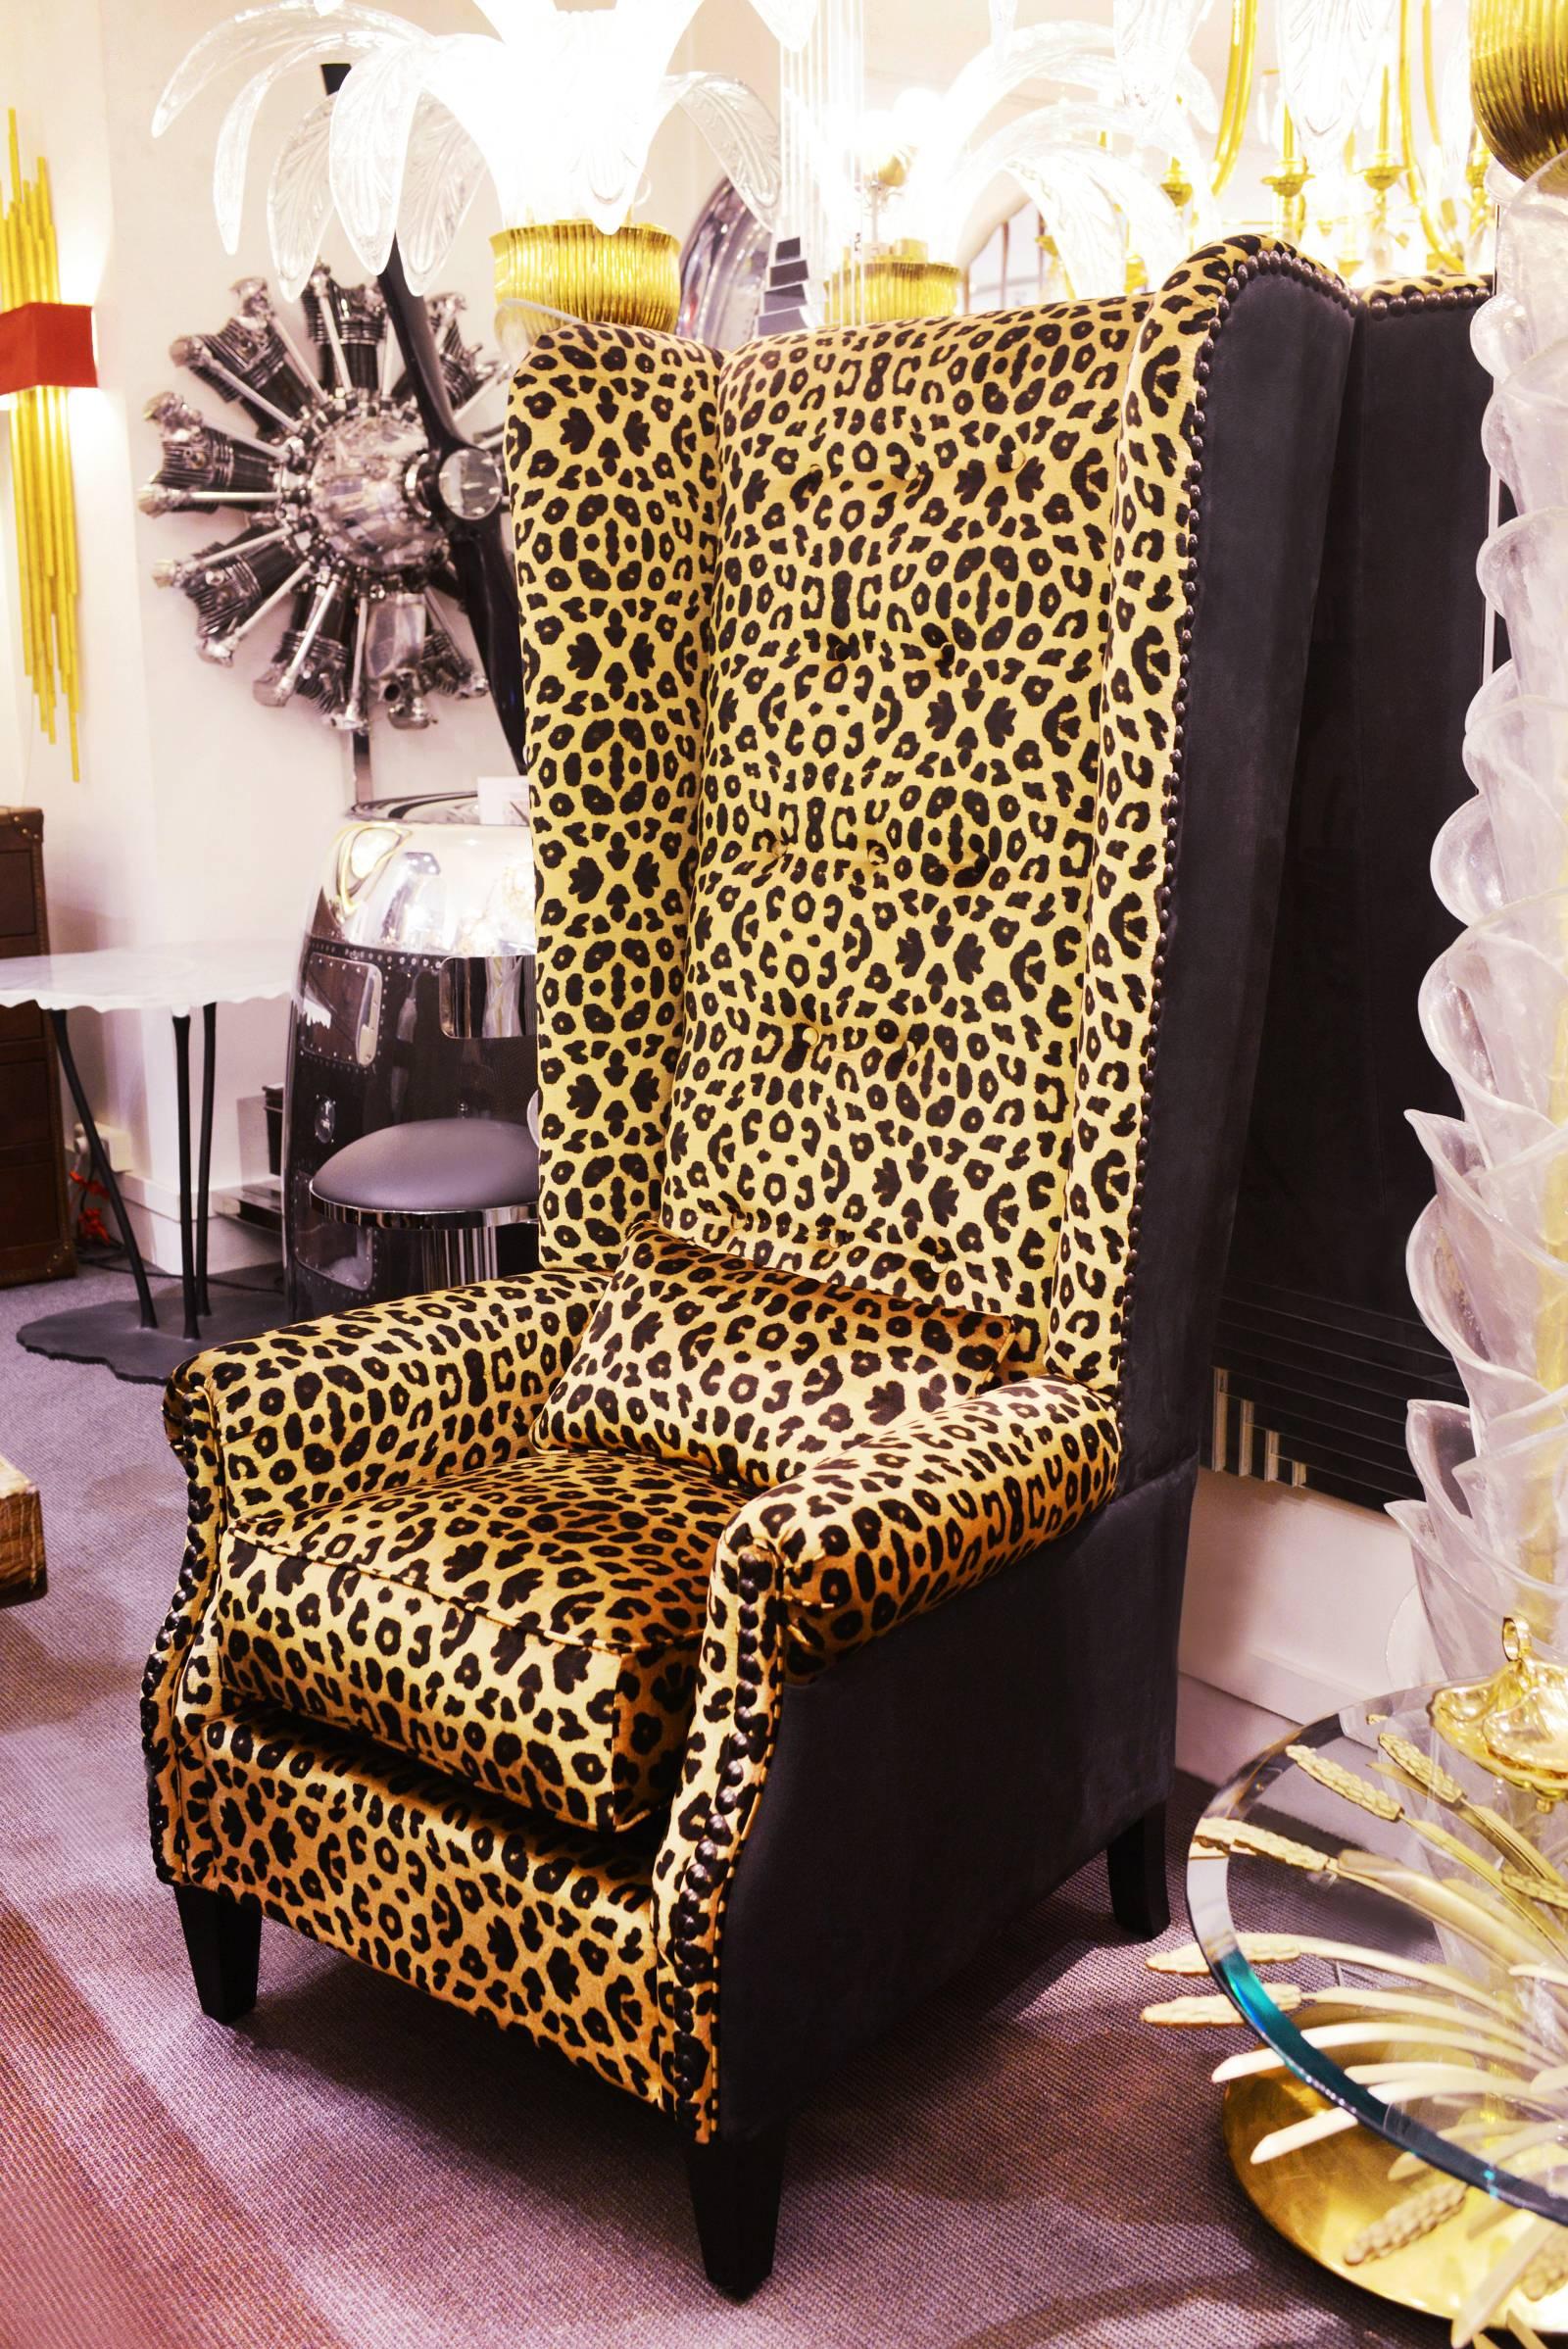 Sessel Leopard mit Struktur aus Massivholz,
gepolstert mit hochwertigem Leoparden-Samtstoff.
Seiten und Rücken mit hochwertigem Echtleder bezogen 
schwarzes Nubukleder. Nägel in schwarzer Bronzeausführung.
 